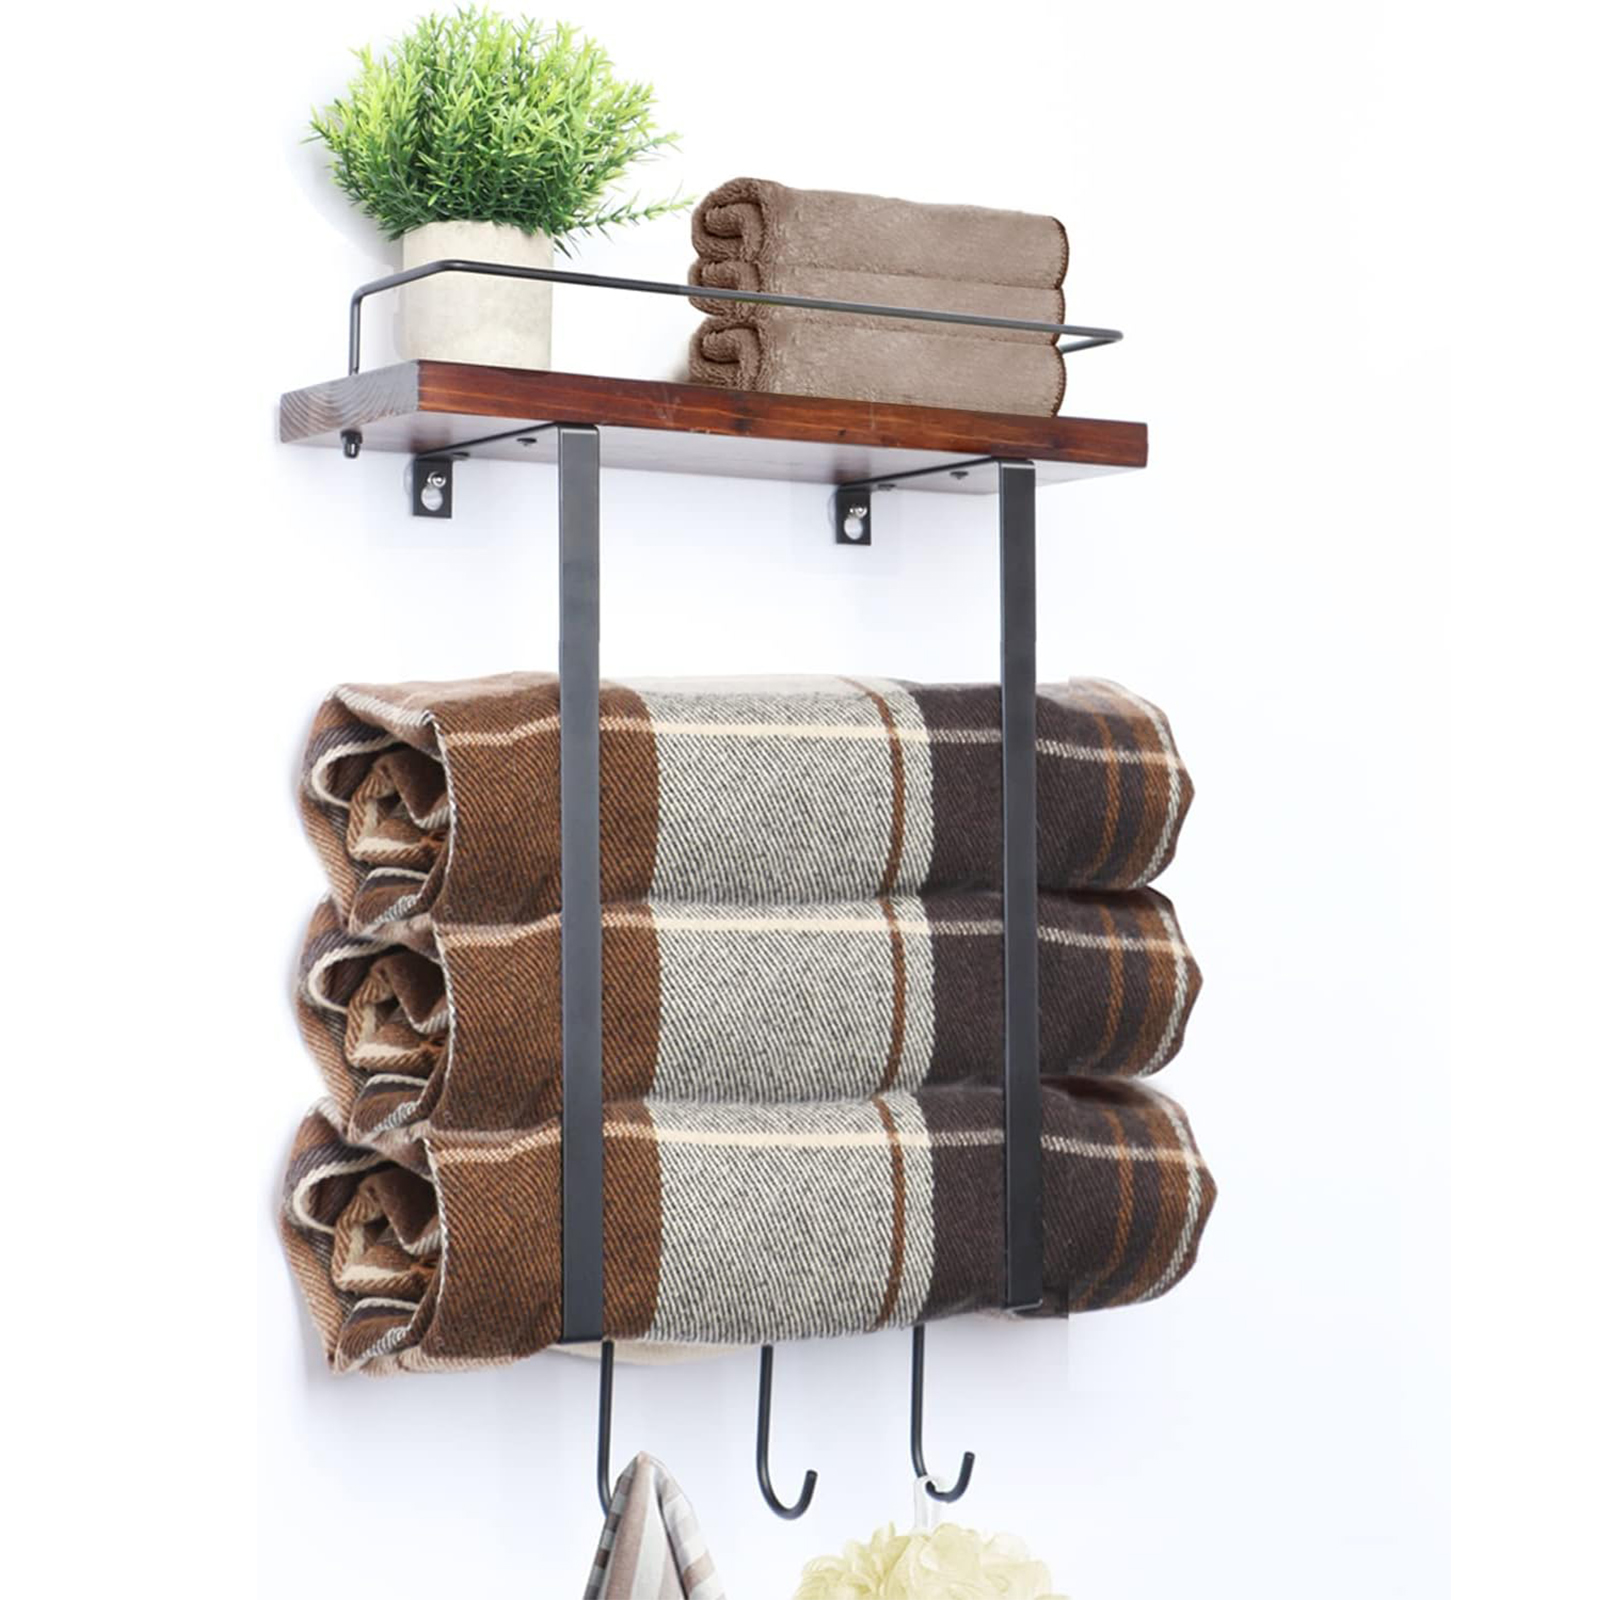 Towel Rack With Wooden Shelf